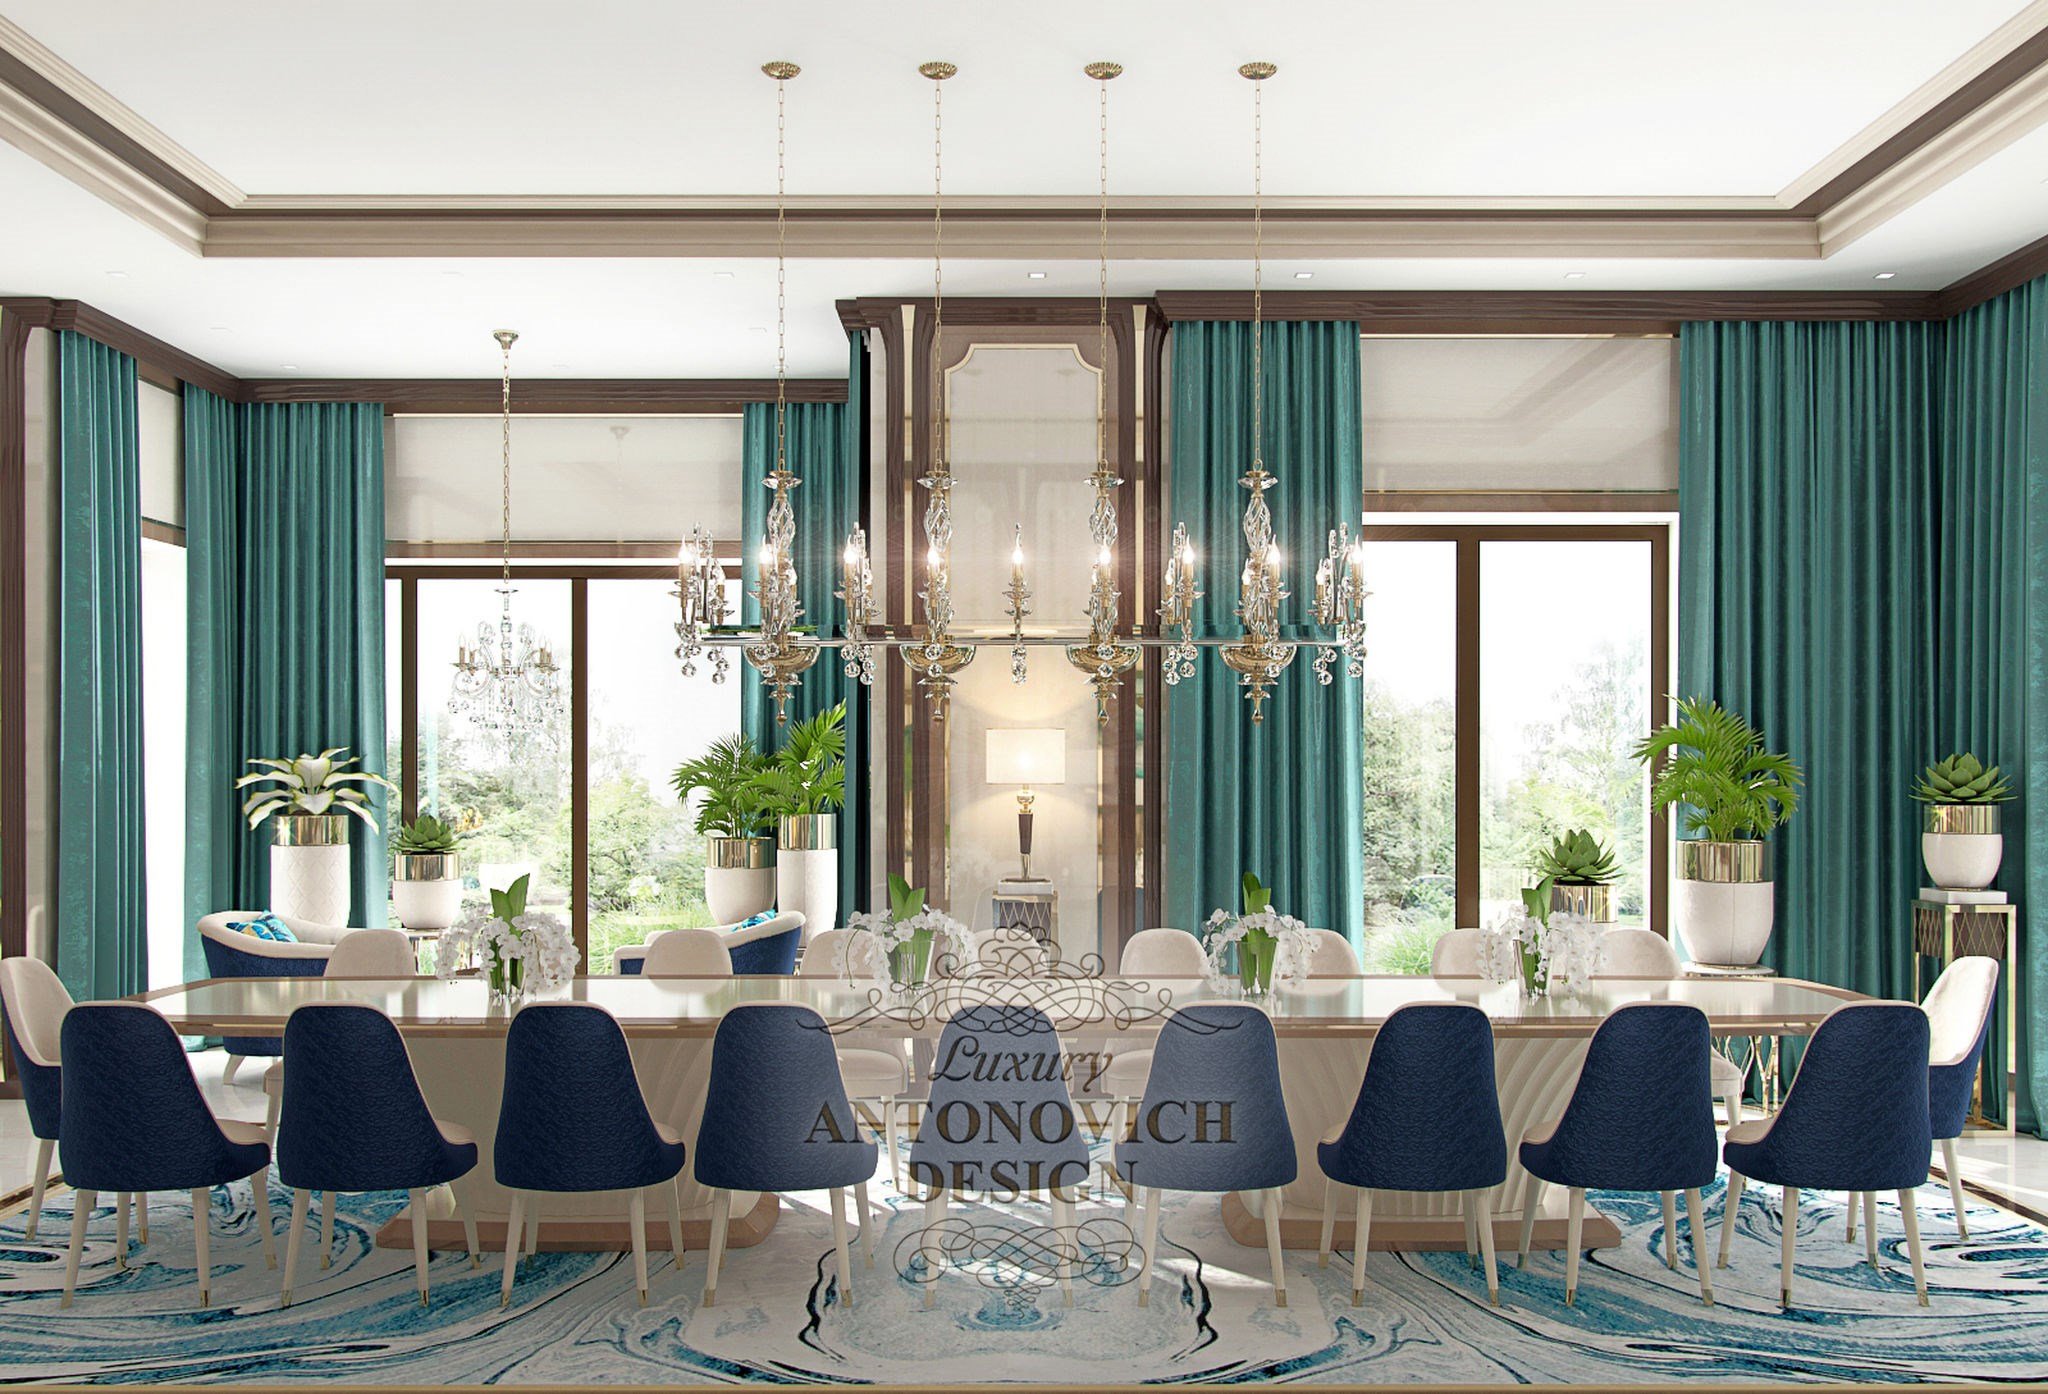 Проект дизайна гостиной с большим столом от студии элитных интерьеров Luxury ANTONOVICH DESIGN